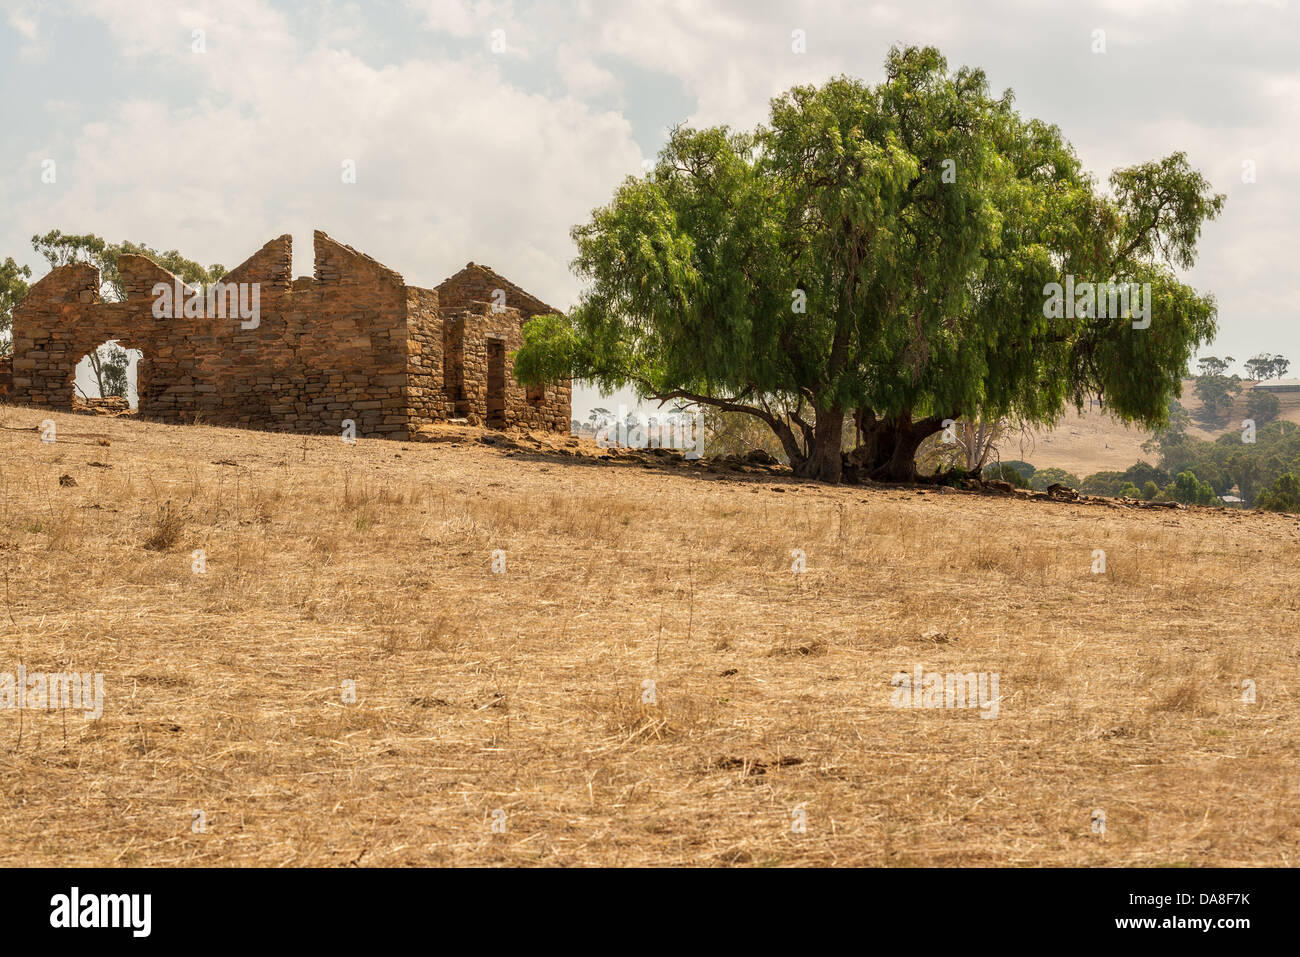 Ruines d'un ancien homestead se trouve dans une cour de ferme à sec dans l'Australie du Sud touchés par la sécheresse. Edition Standard, version HDR également disponible Banque D'Images